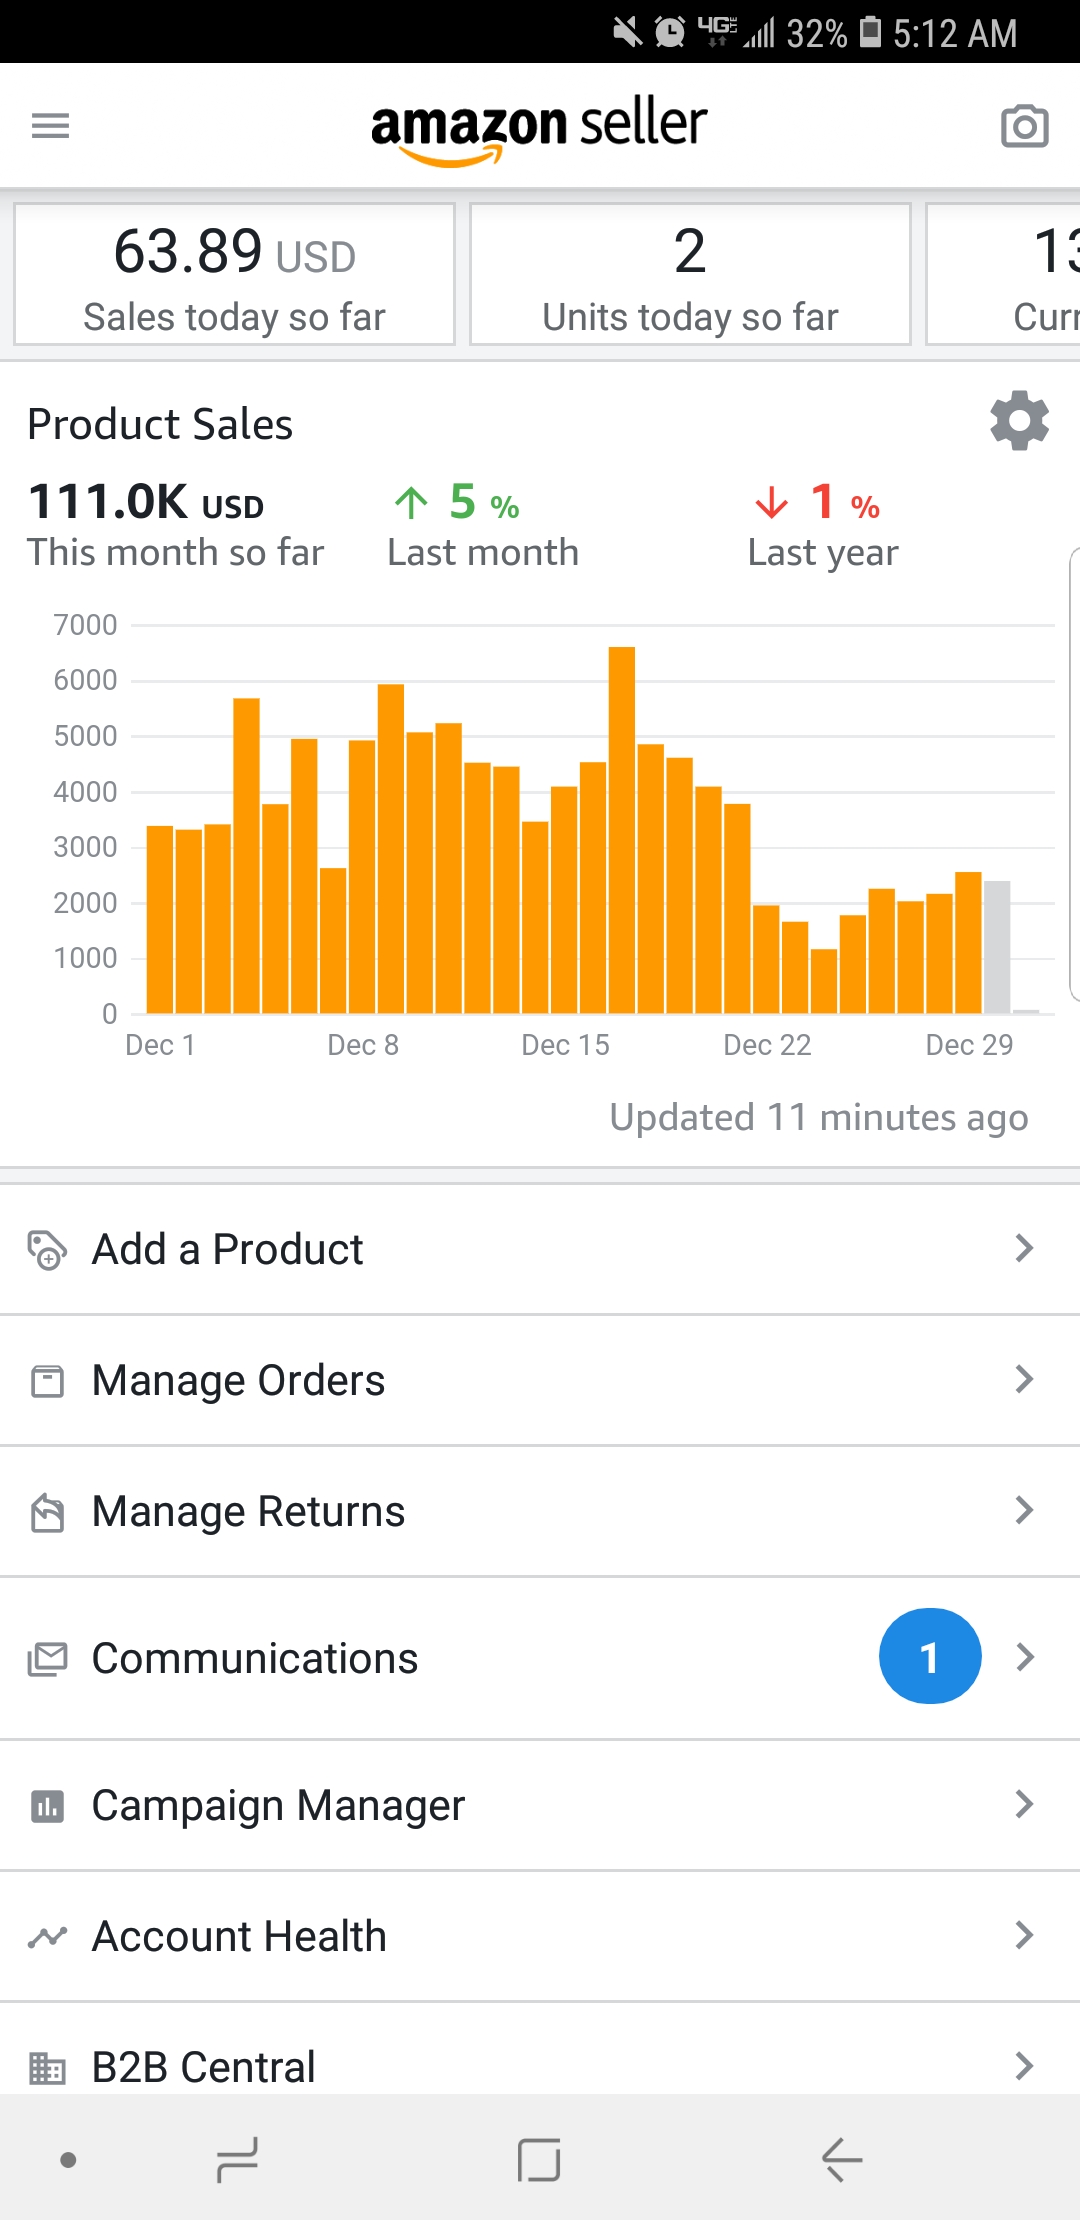 Amazon Seller Product Sales - FBALeadList.com